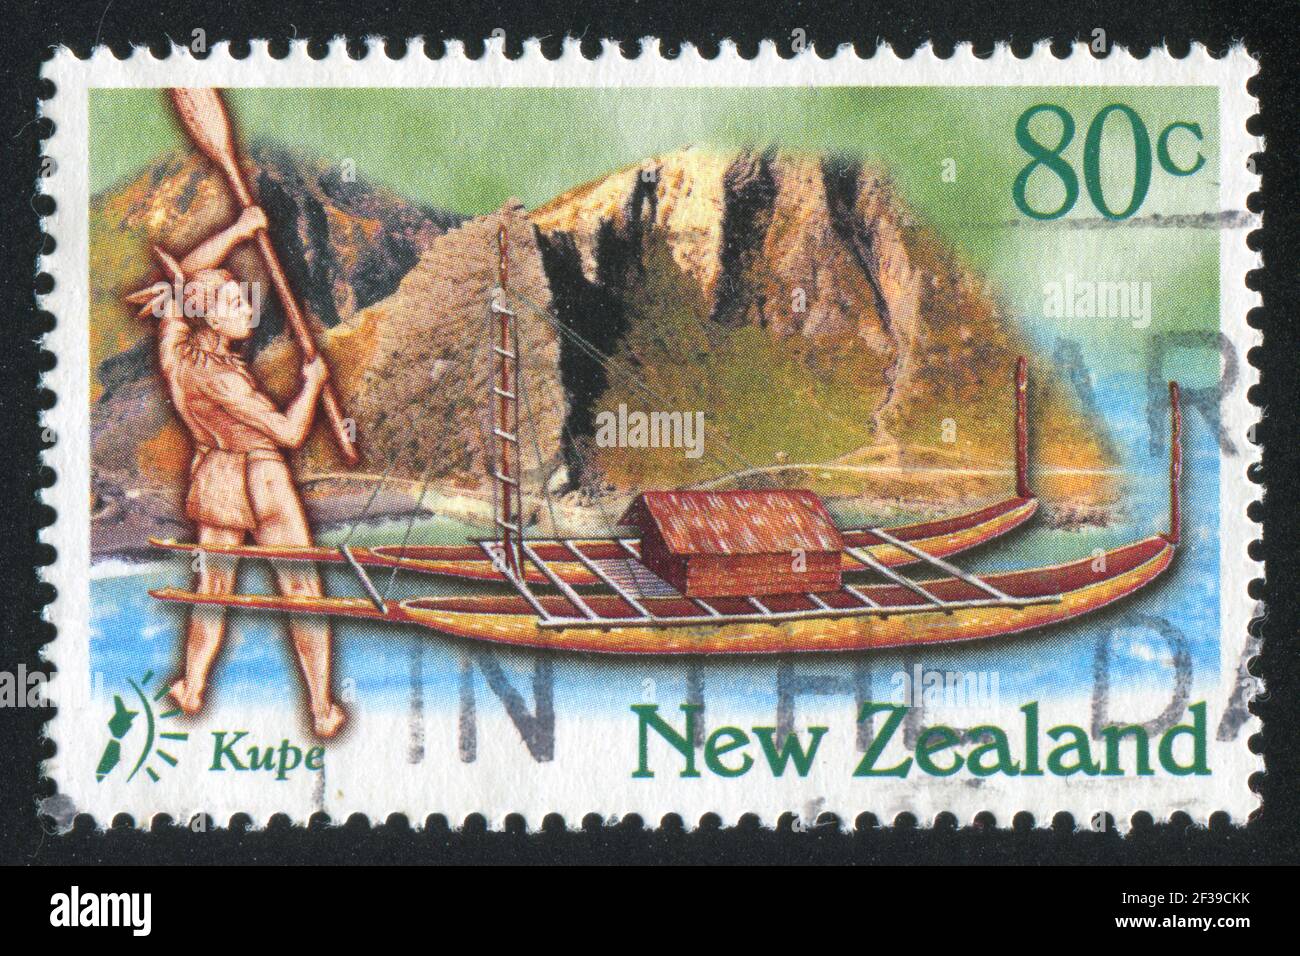 NOUVELLE-ZÉLANDE - VERS 1997: Timbre imprimé par la Nouvelle-Zélande, montre Kupe arrivant en Nouvelle-Zélande en bateau, vers 1997 Banque D'Images